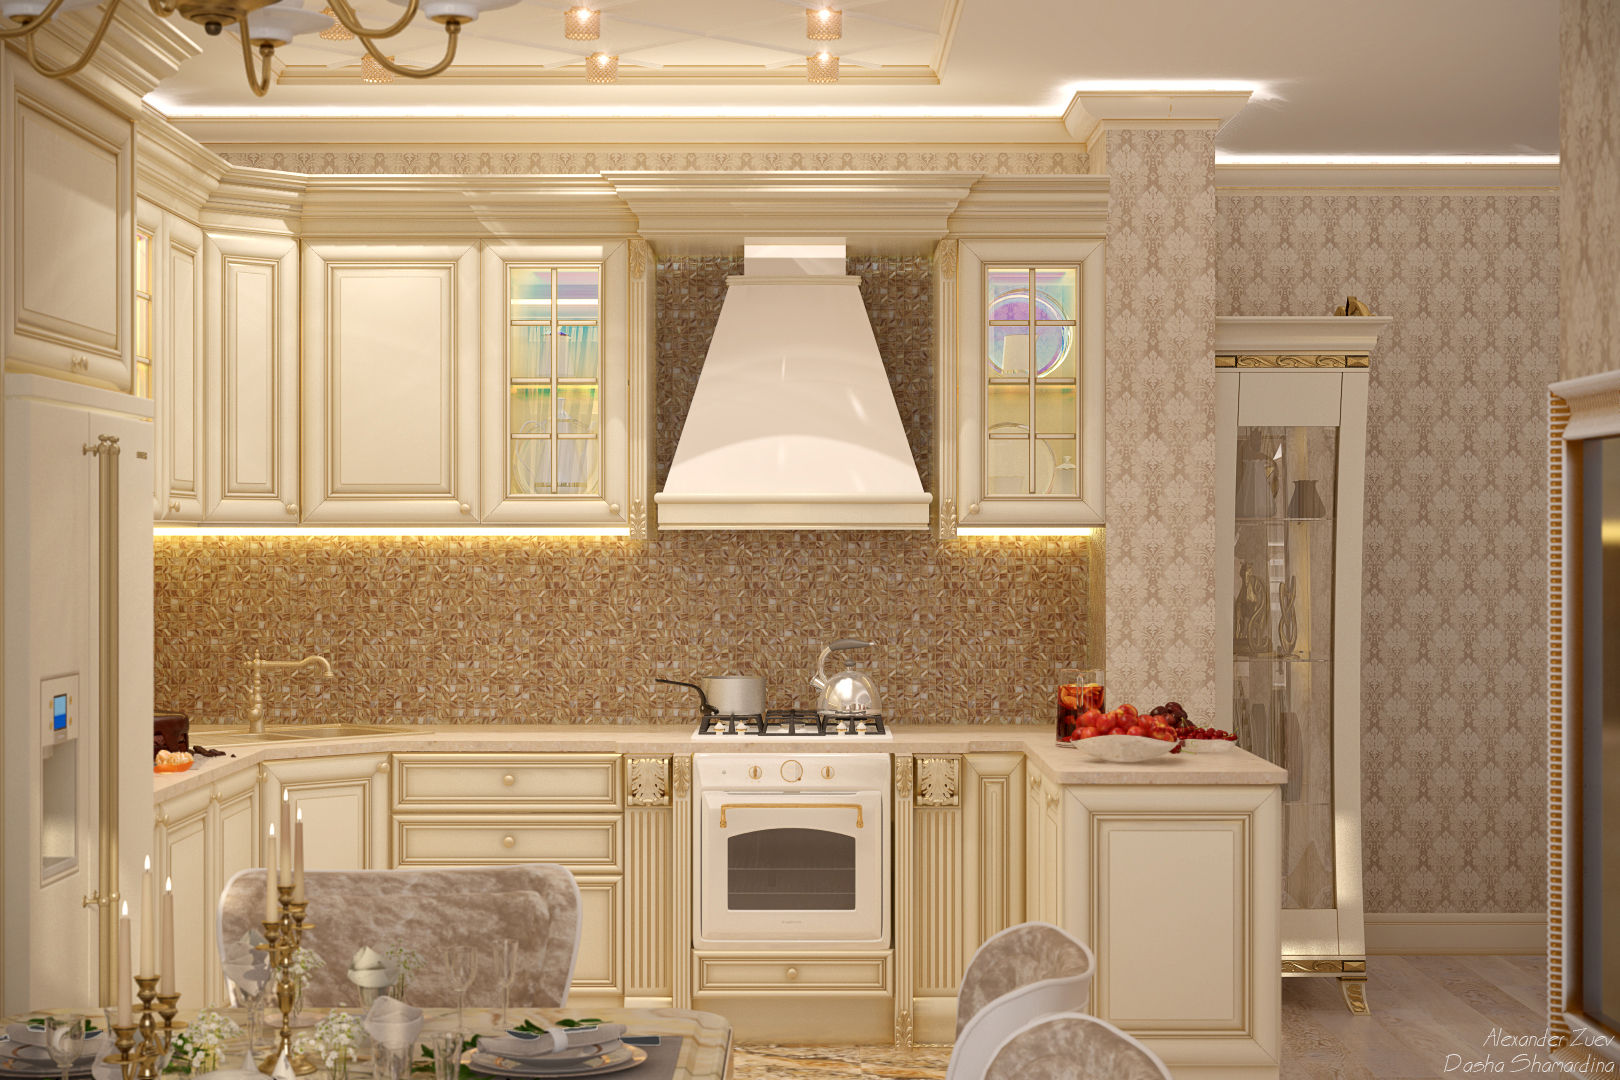 Дизайн кухни-гостиной в классическом стиле в квартире в ЖК "Ливанский дом", г.Краснодар, Студия интерьерного дизайна happy.design Студия интерьерного дизайна happy.design Kitchen